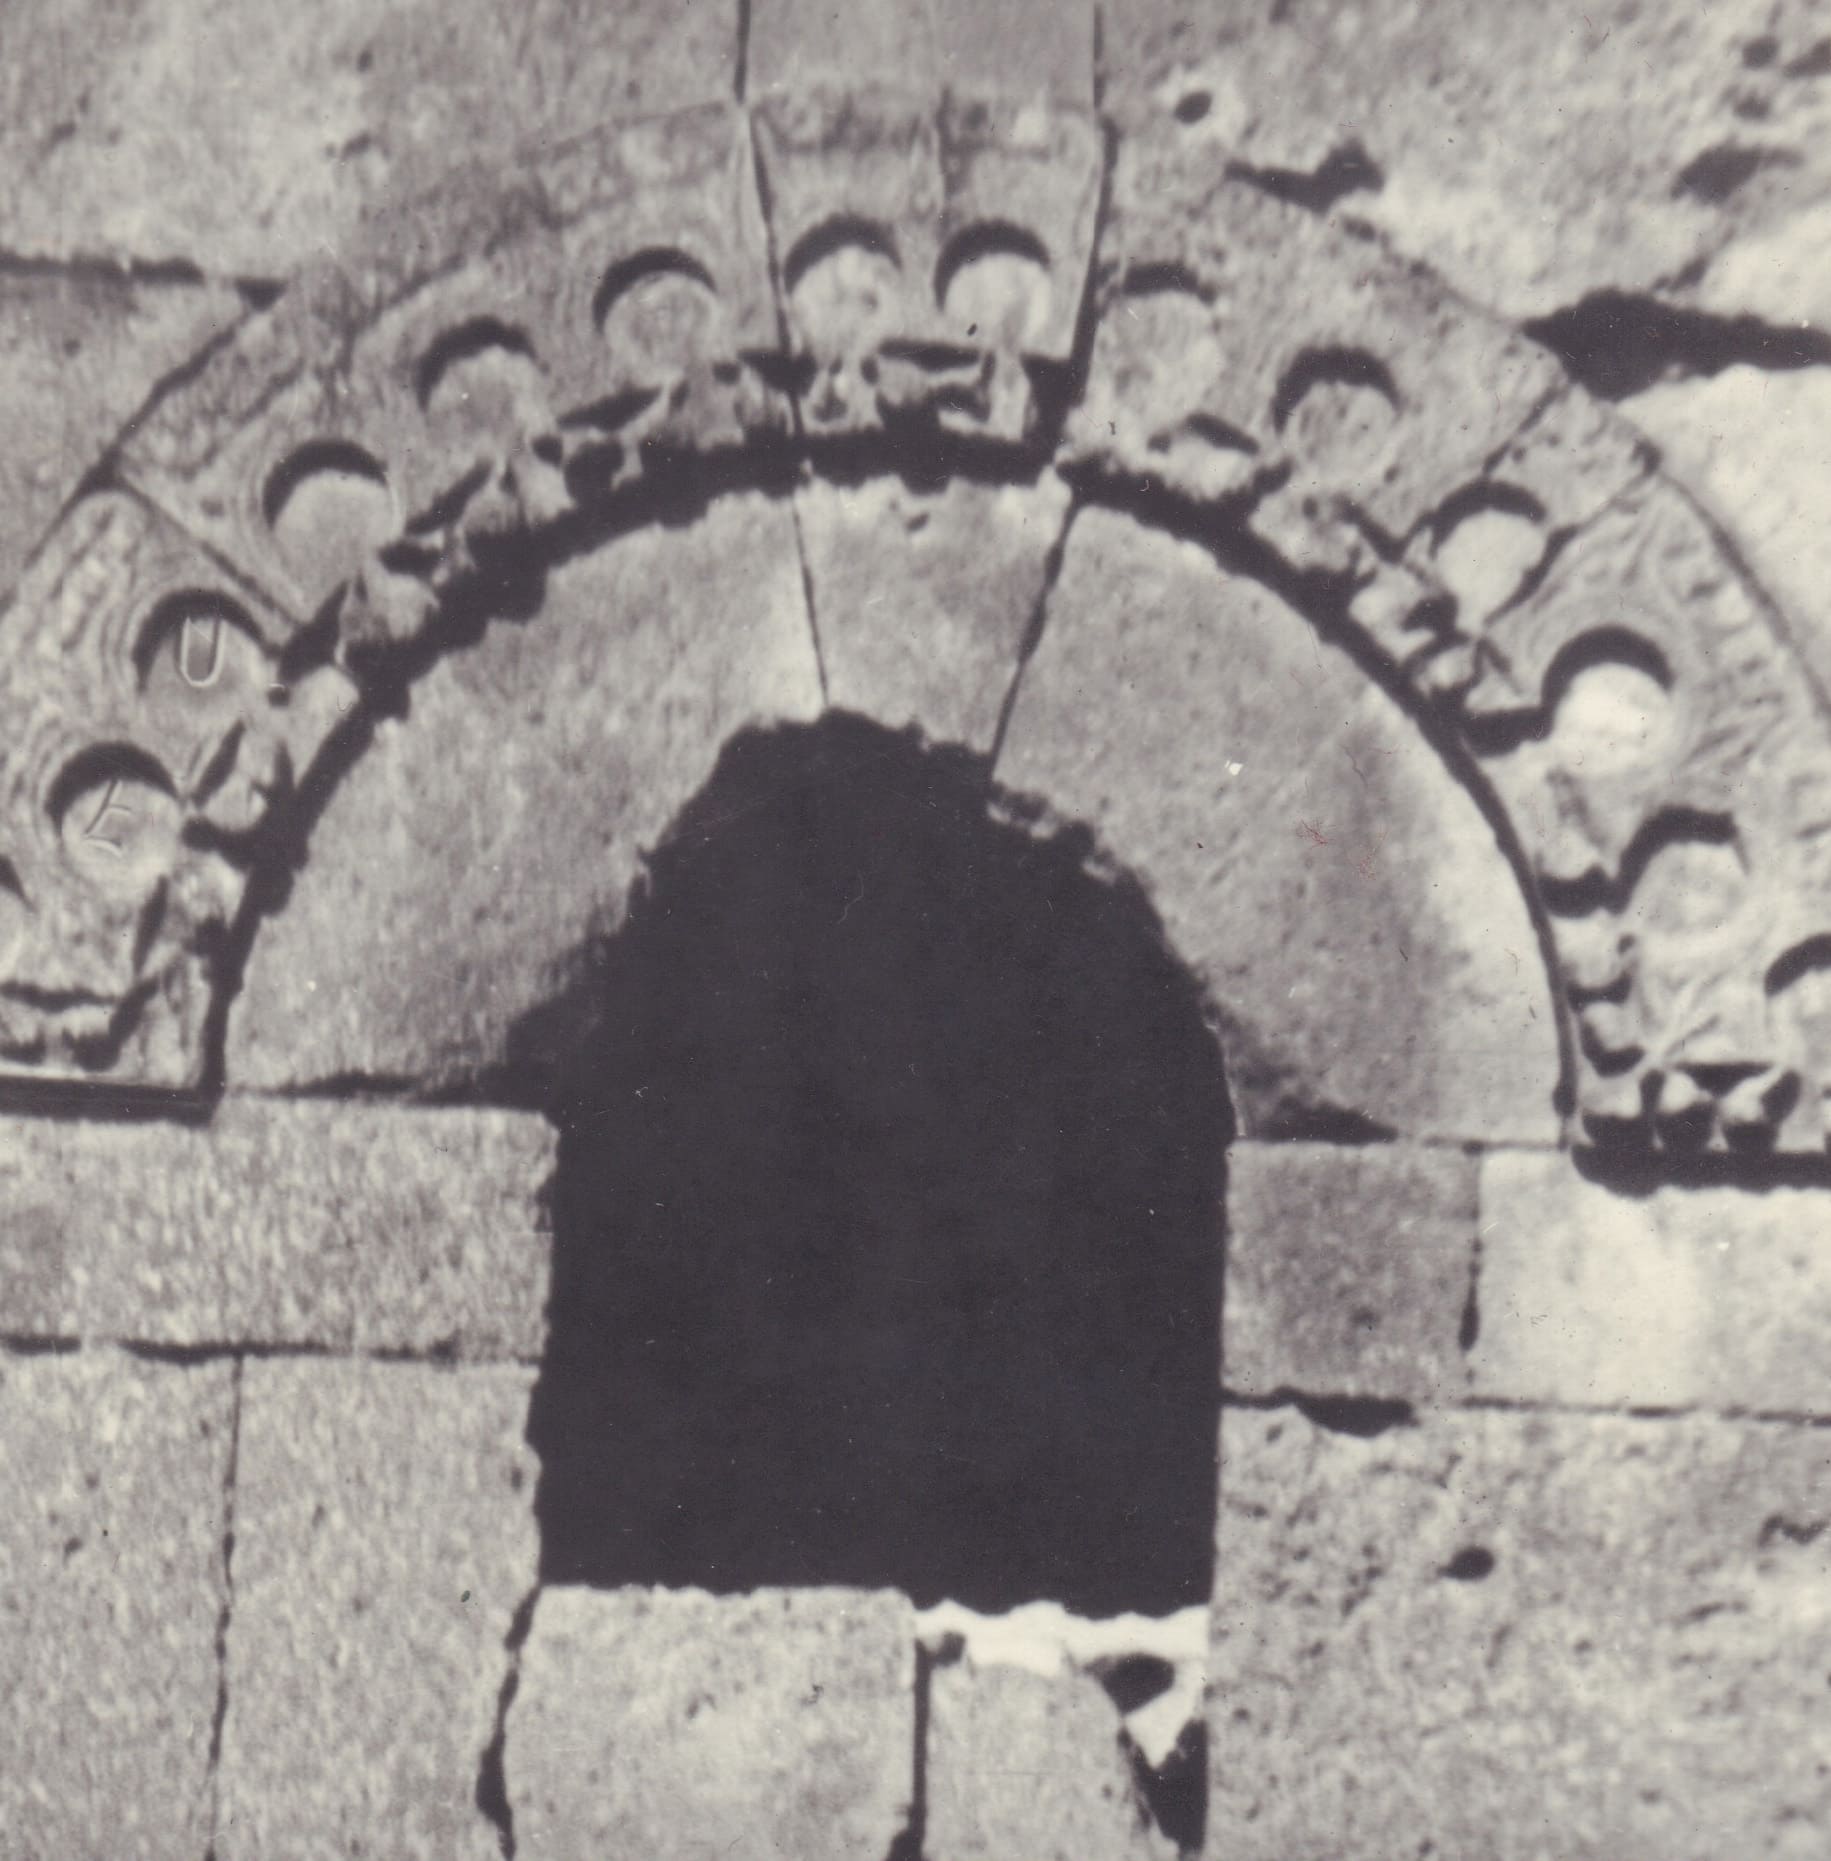 Հարավային խորանի պատուհանի արտաքին կամարաղեղը (լուսանկարը՝ Տ. Մարությանի)